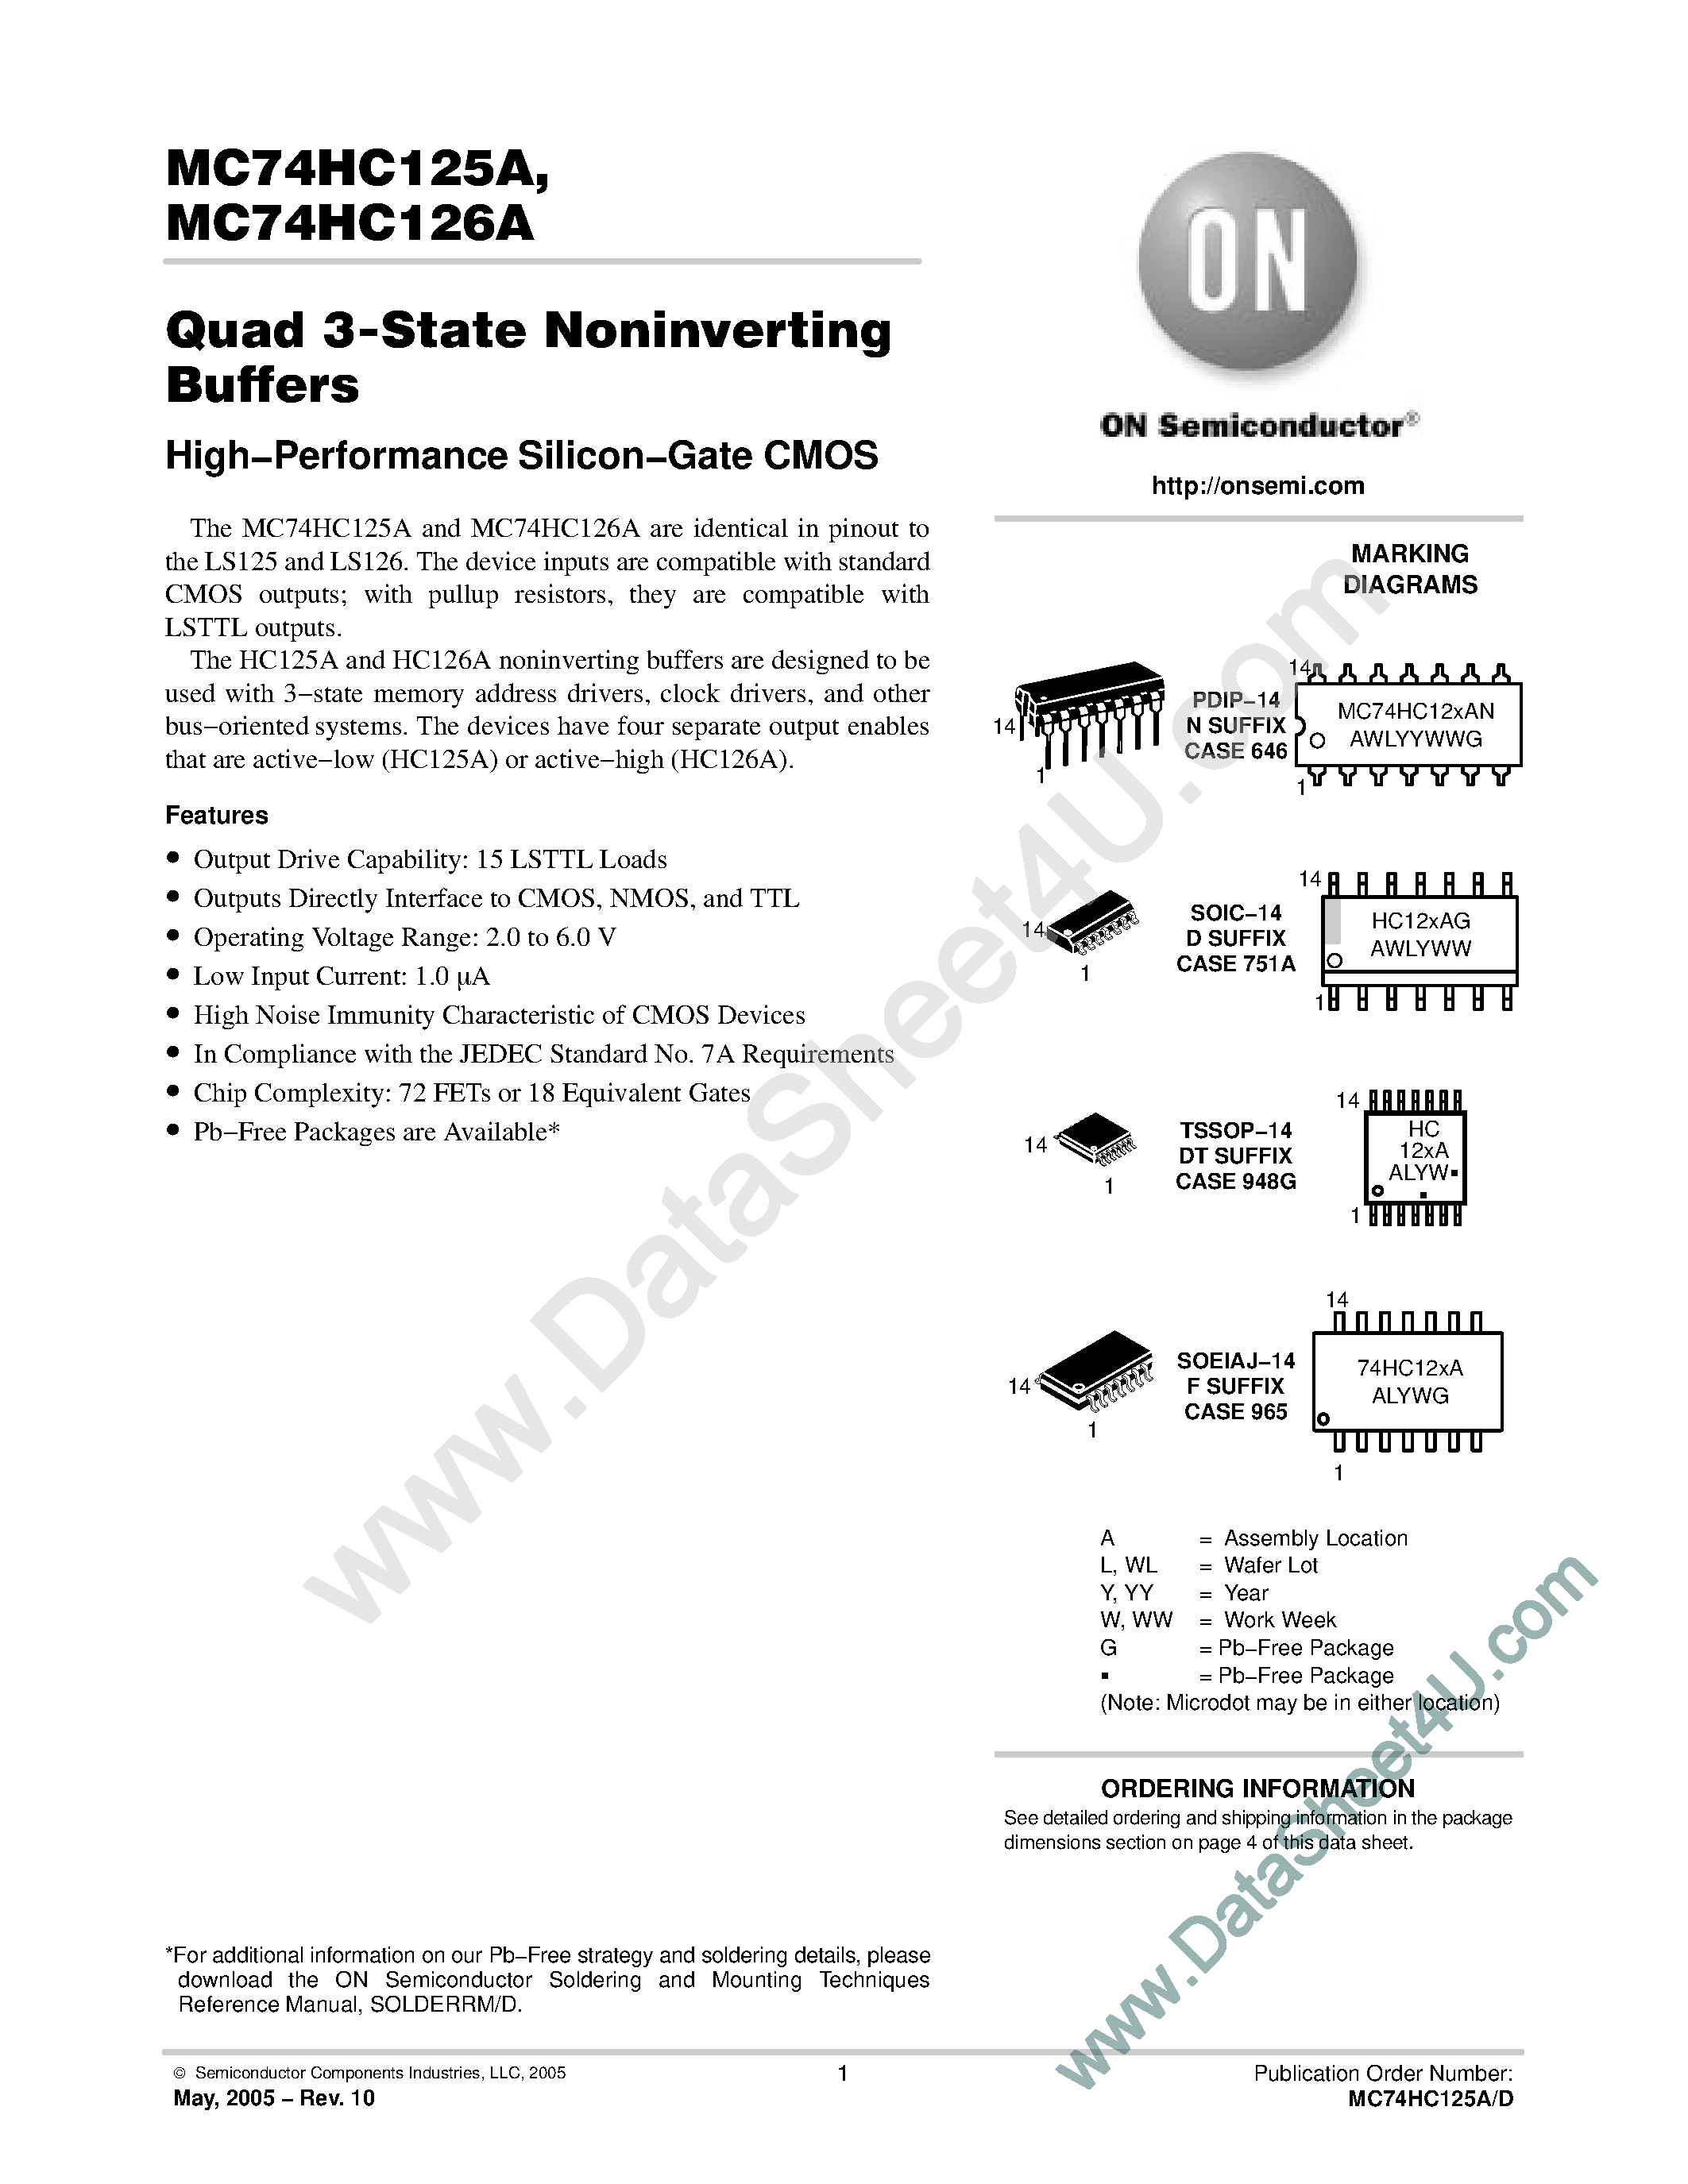 Даташит MC74HC125A - (MC74HC125A / MC74HC126A) Quad 3-State Noninverting Buffers страница 1